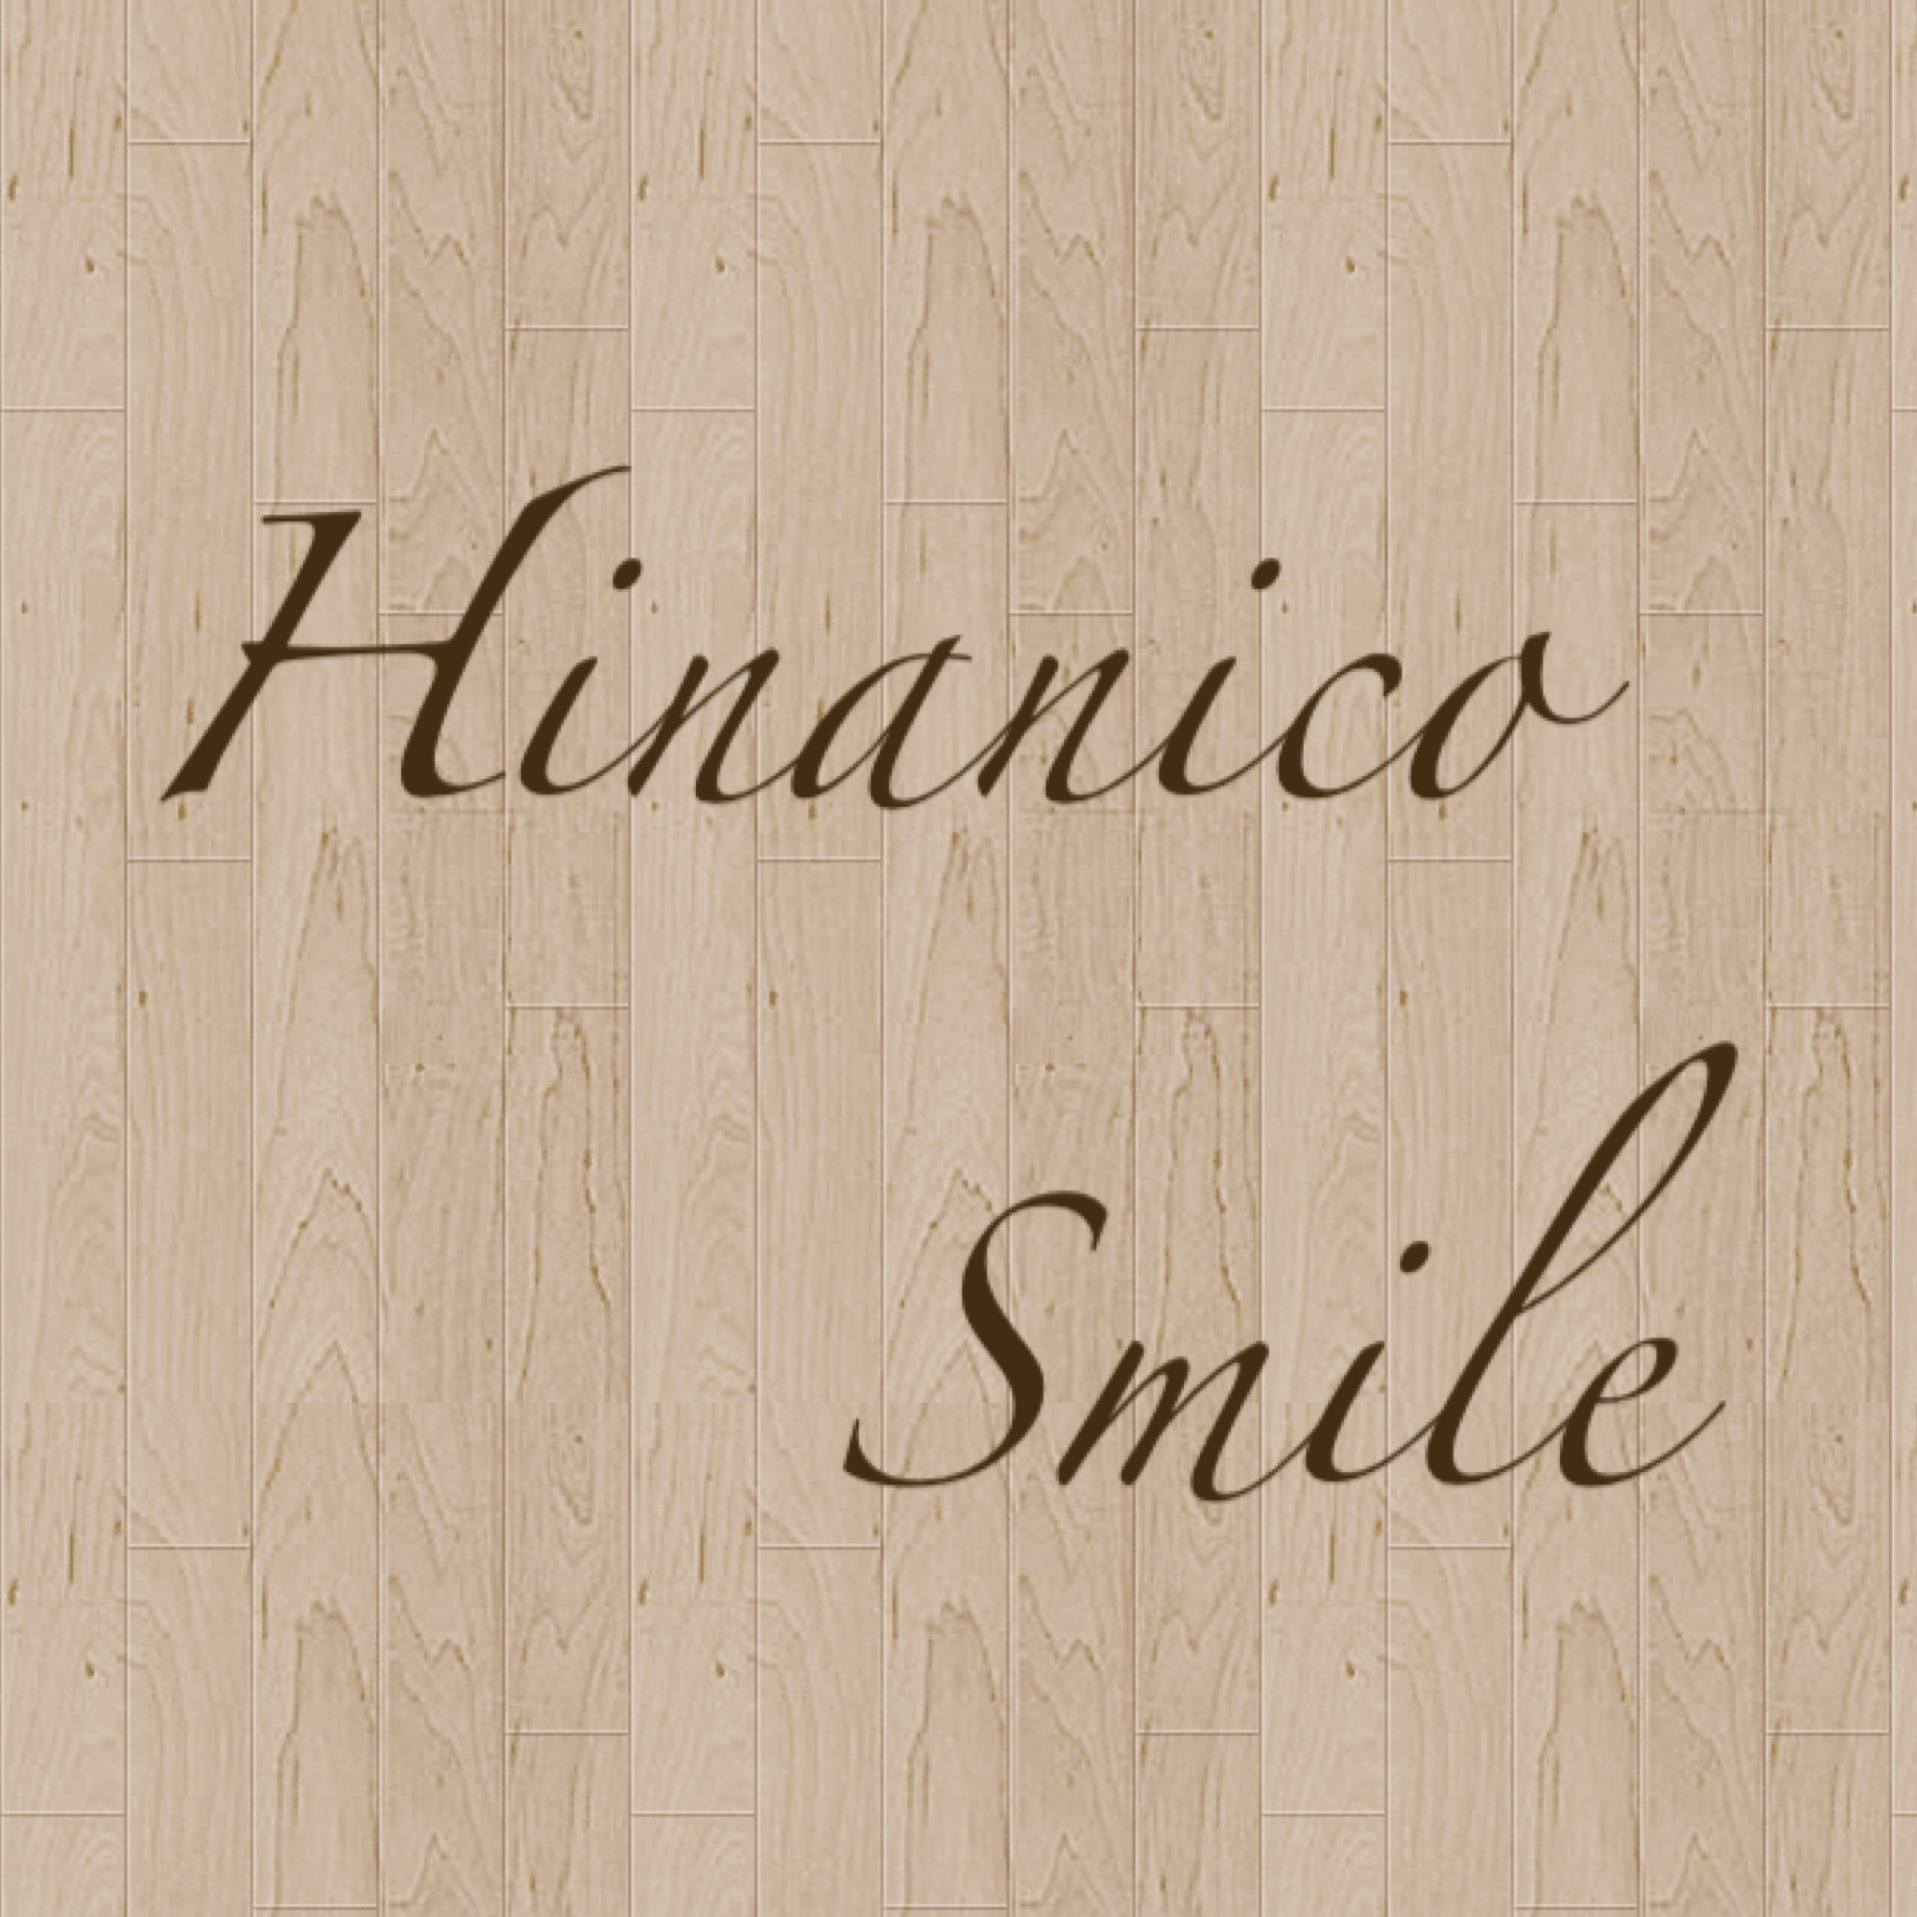 Hinanico Smile